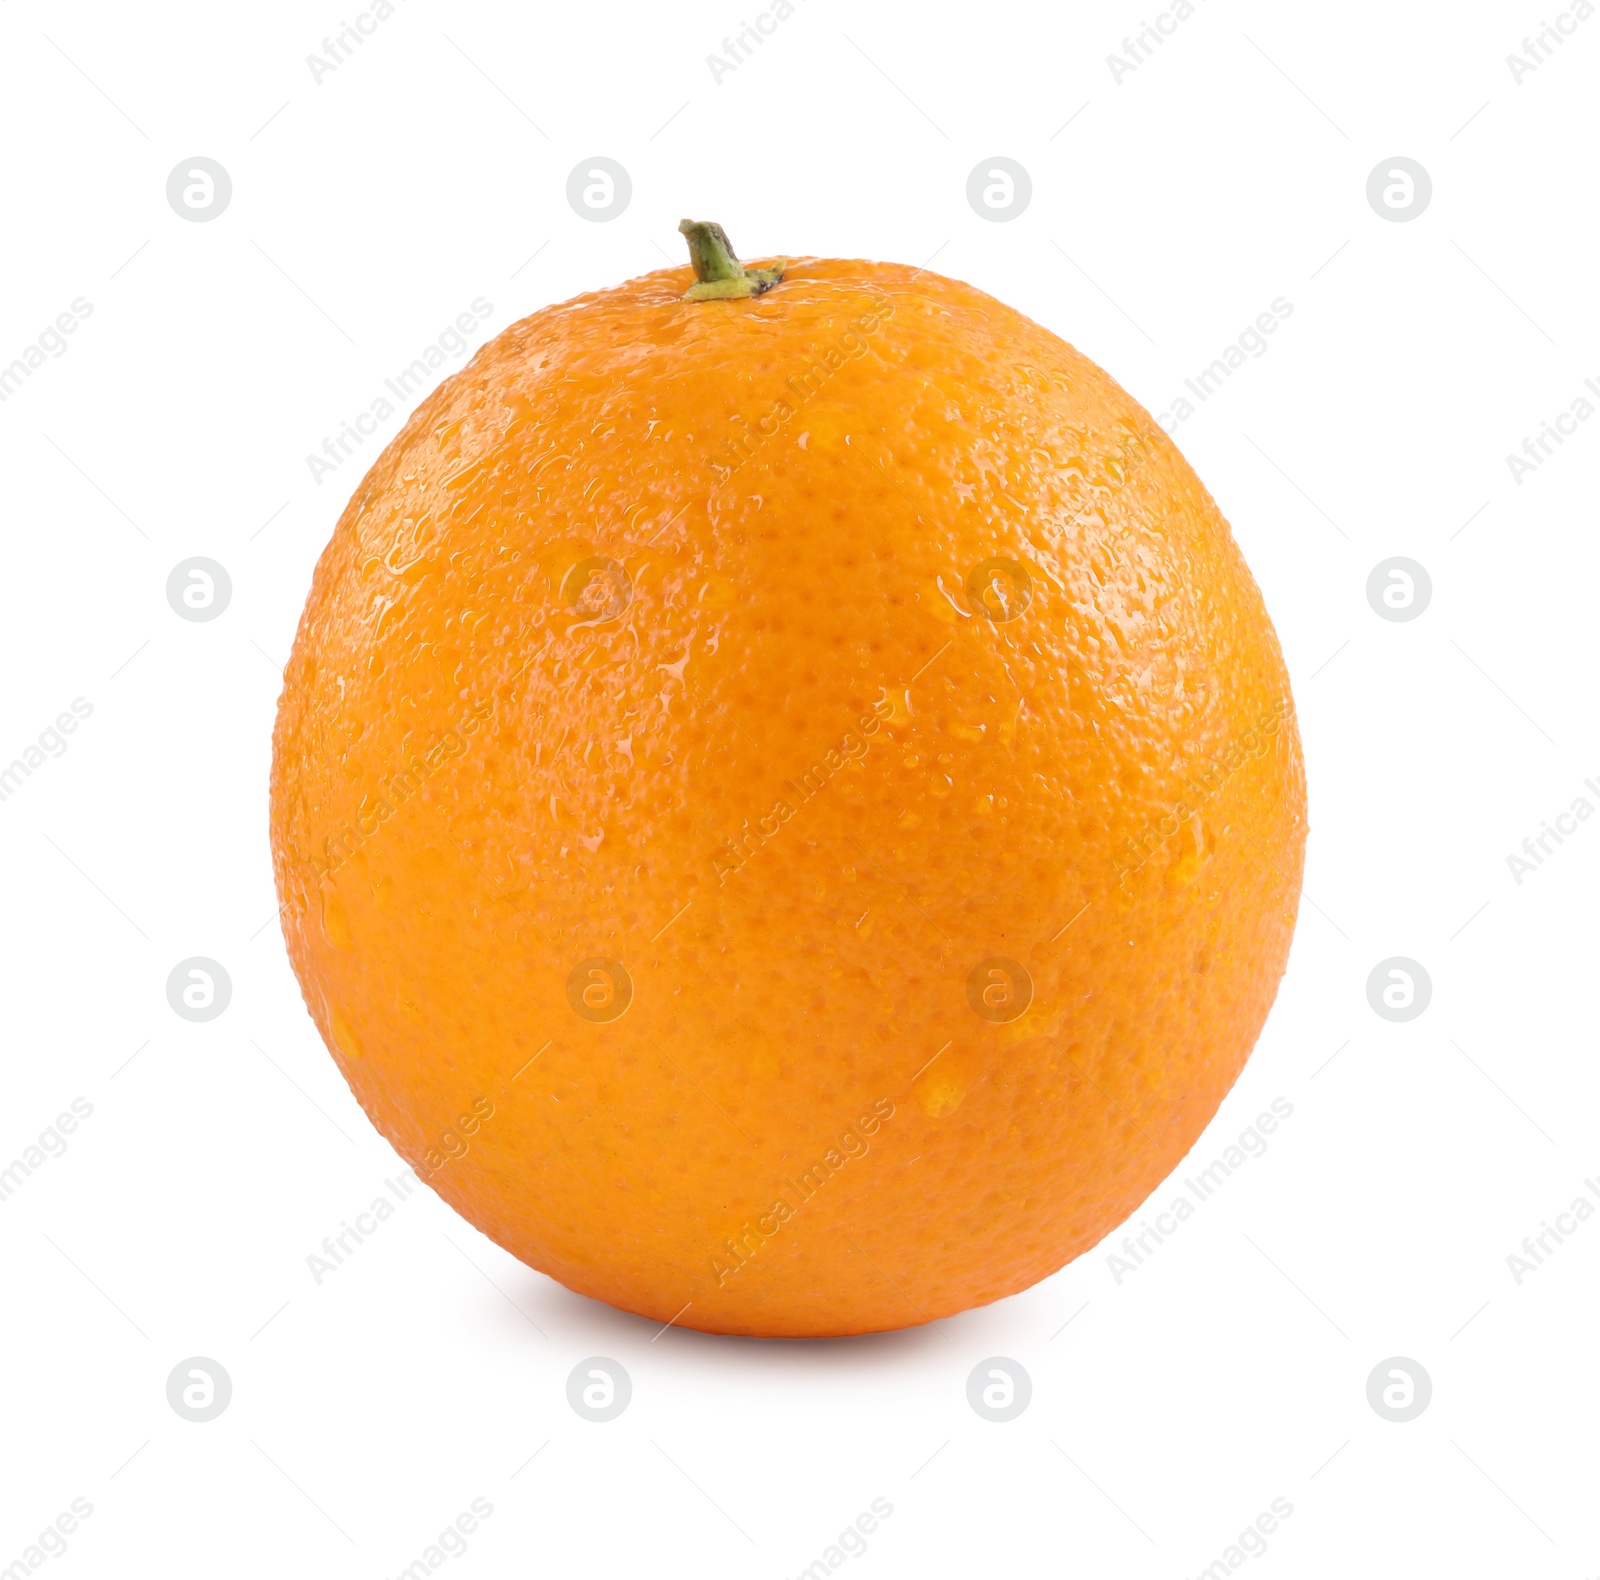 Photo of One fresh ripe orange isolated on white